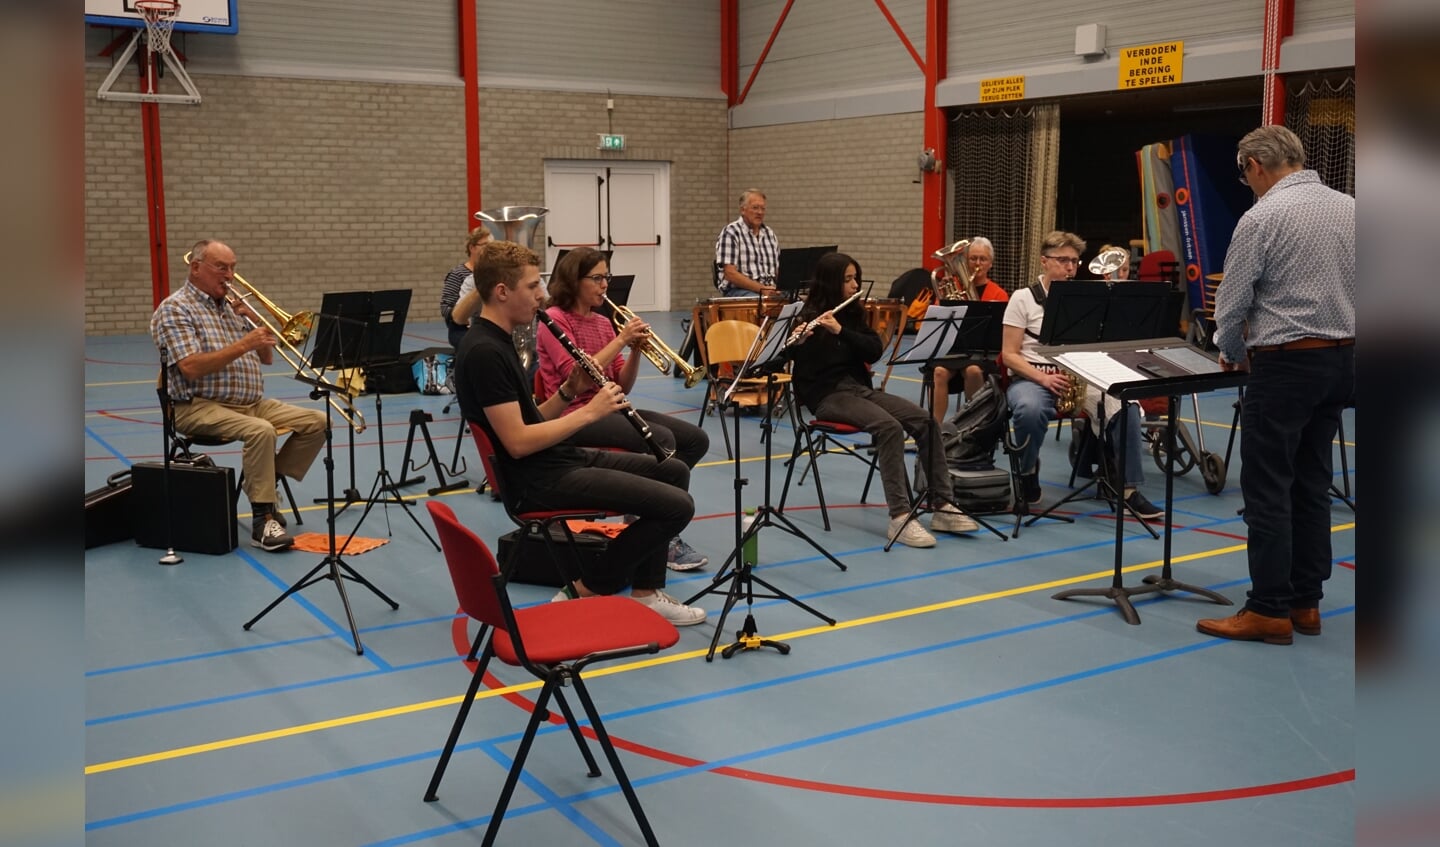 In De Vierstee in Maartensdijk gaf het Opstaporkest van muziekvereniging Kunst en Genoegen een concert. De jonge leden speelden met veel enthousiasme. Het publiek beloonde hen met een enthousiast applaus. (foto Frans Poot)